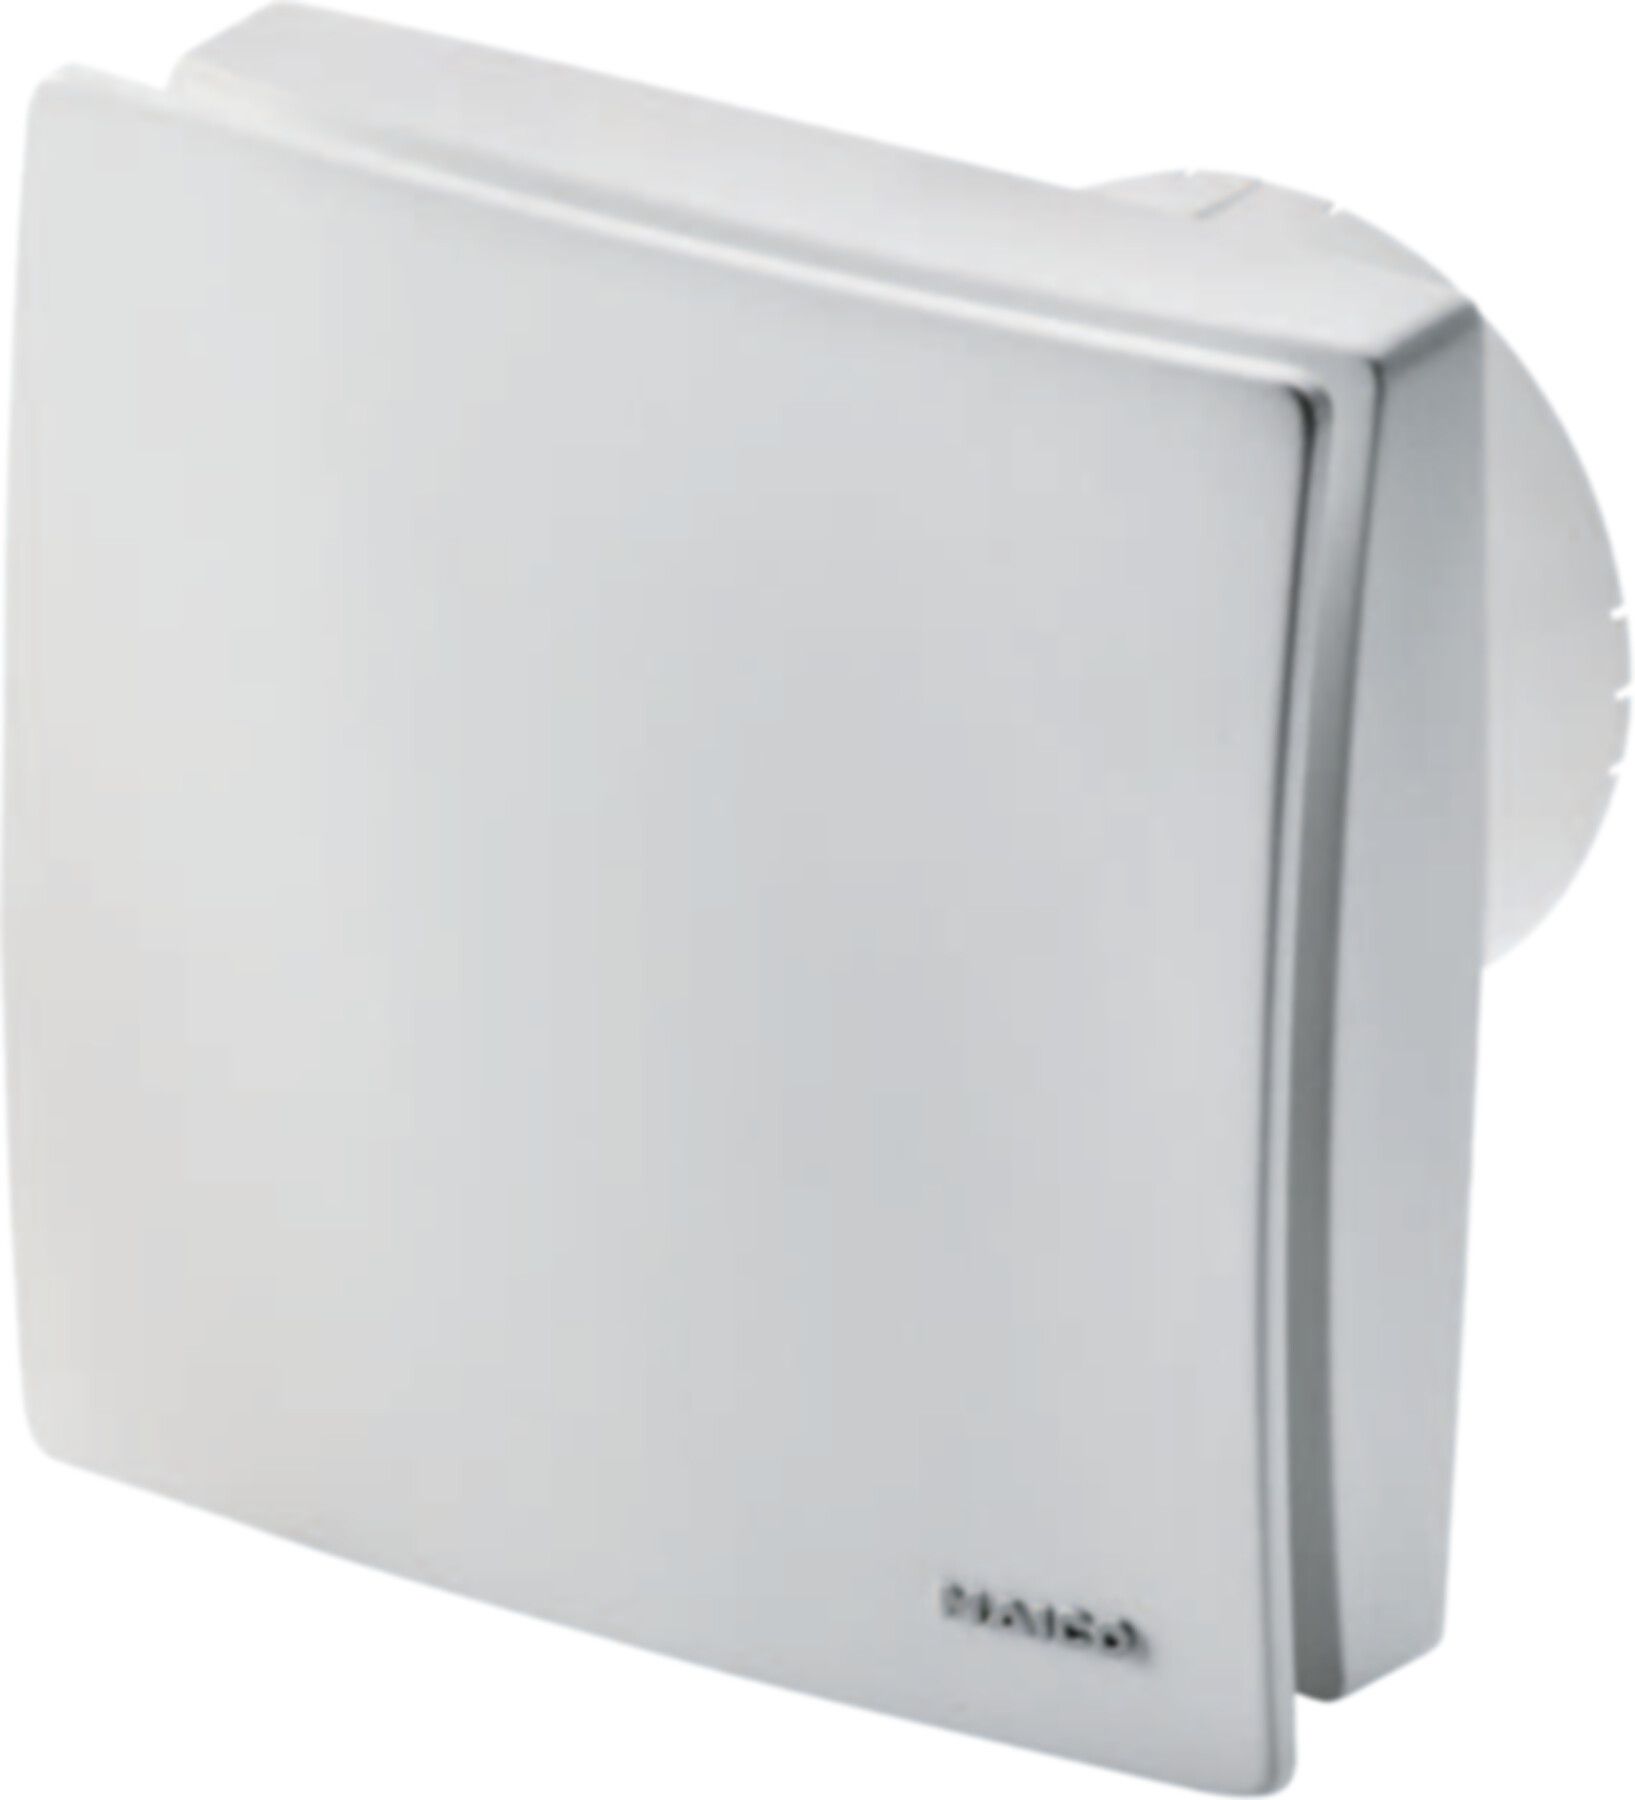 Bad / WC-Ventilatoren COMPETAIR Maico ECA 100 ipro B